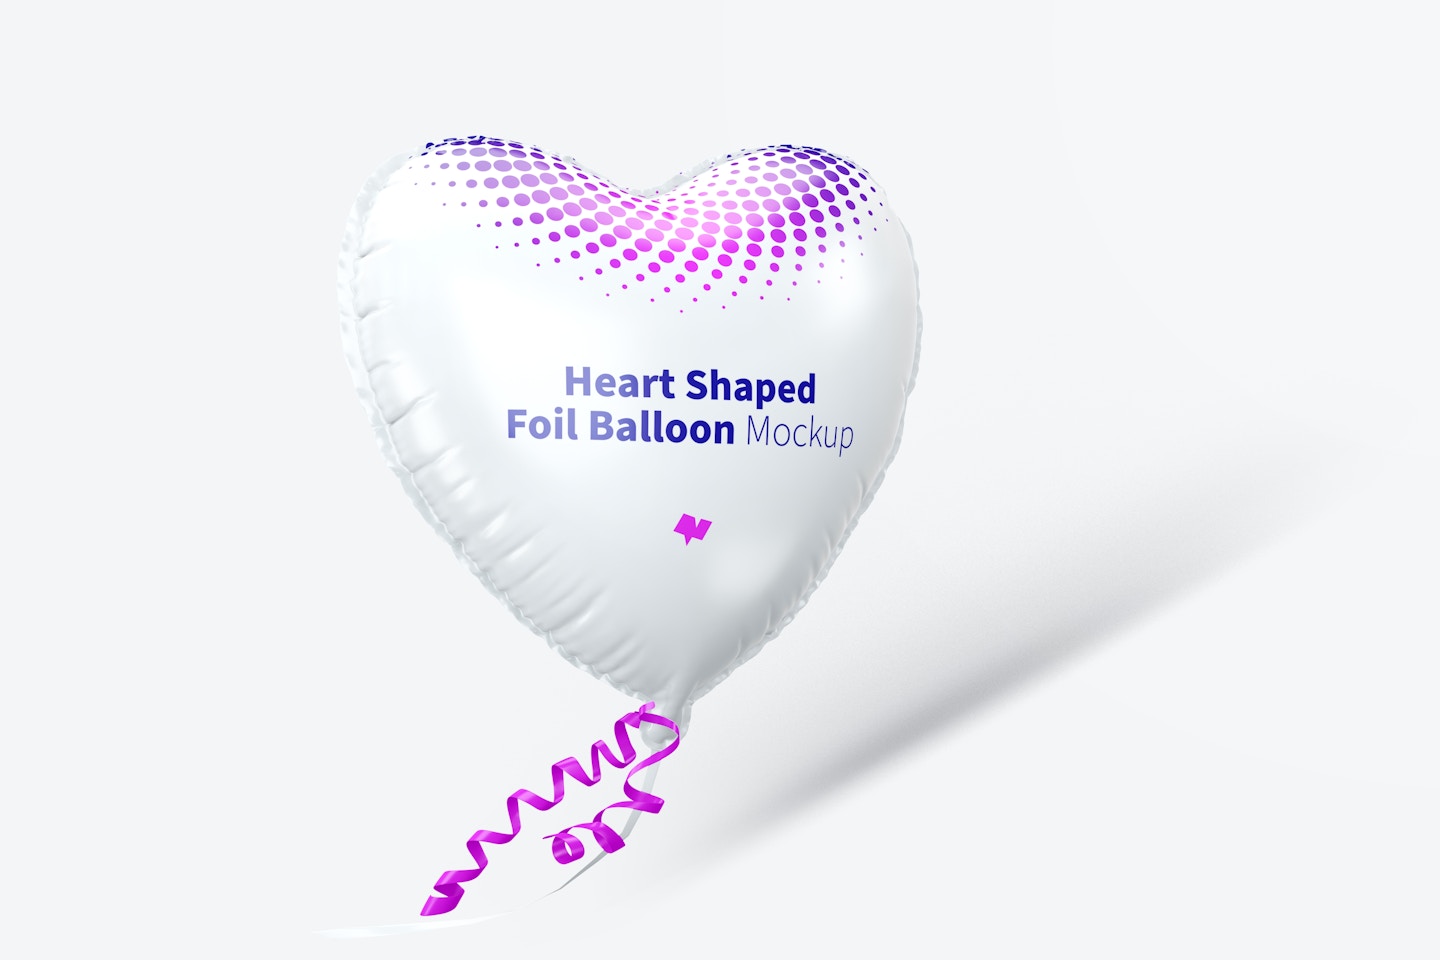 Heart Shaped Foil Balloon Mockup